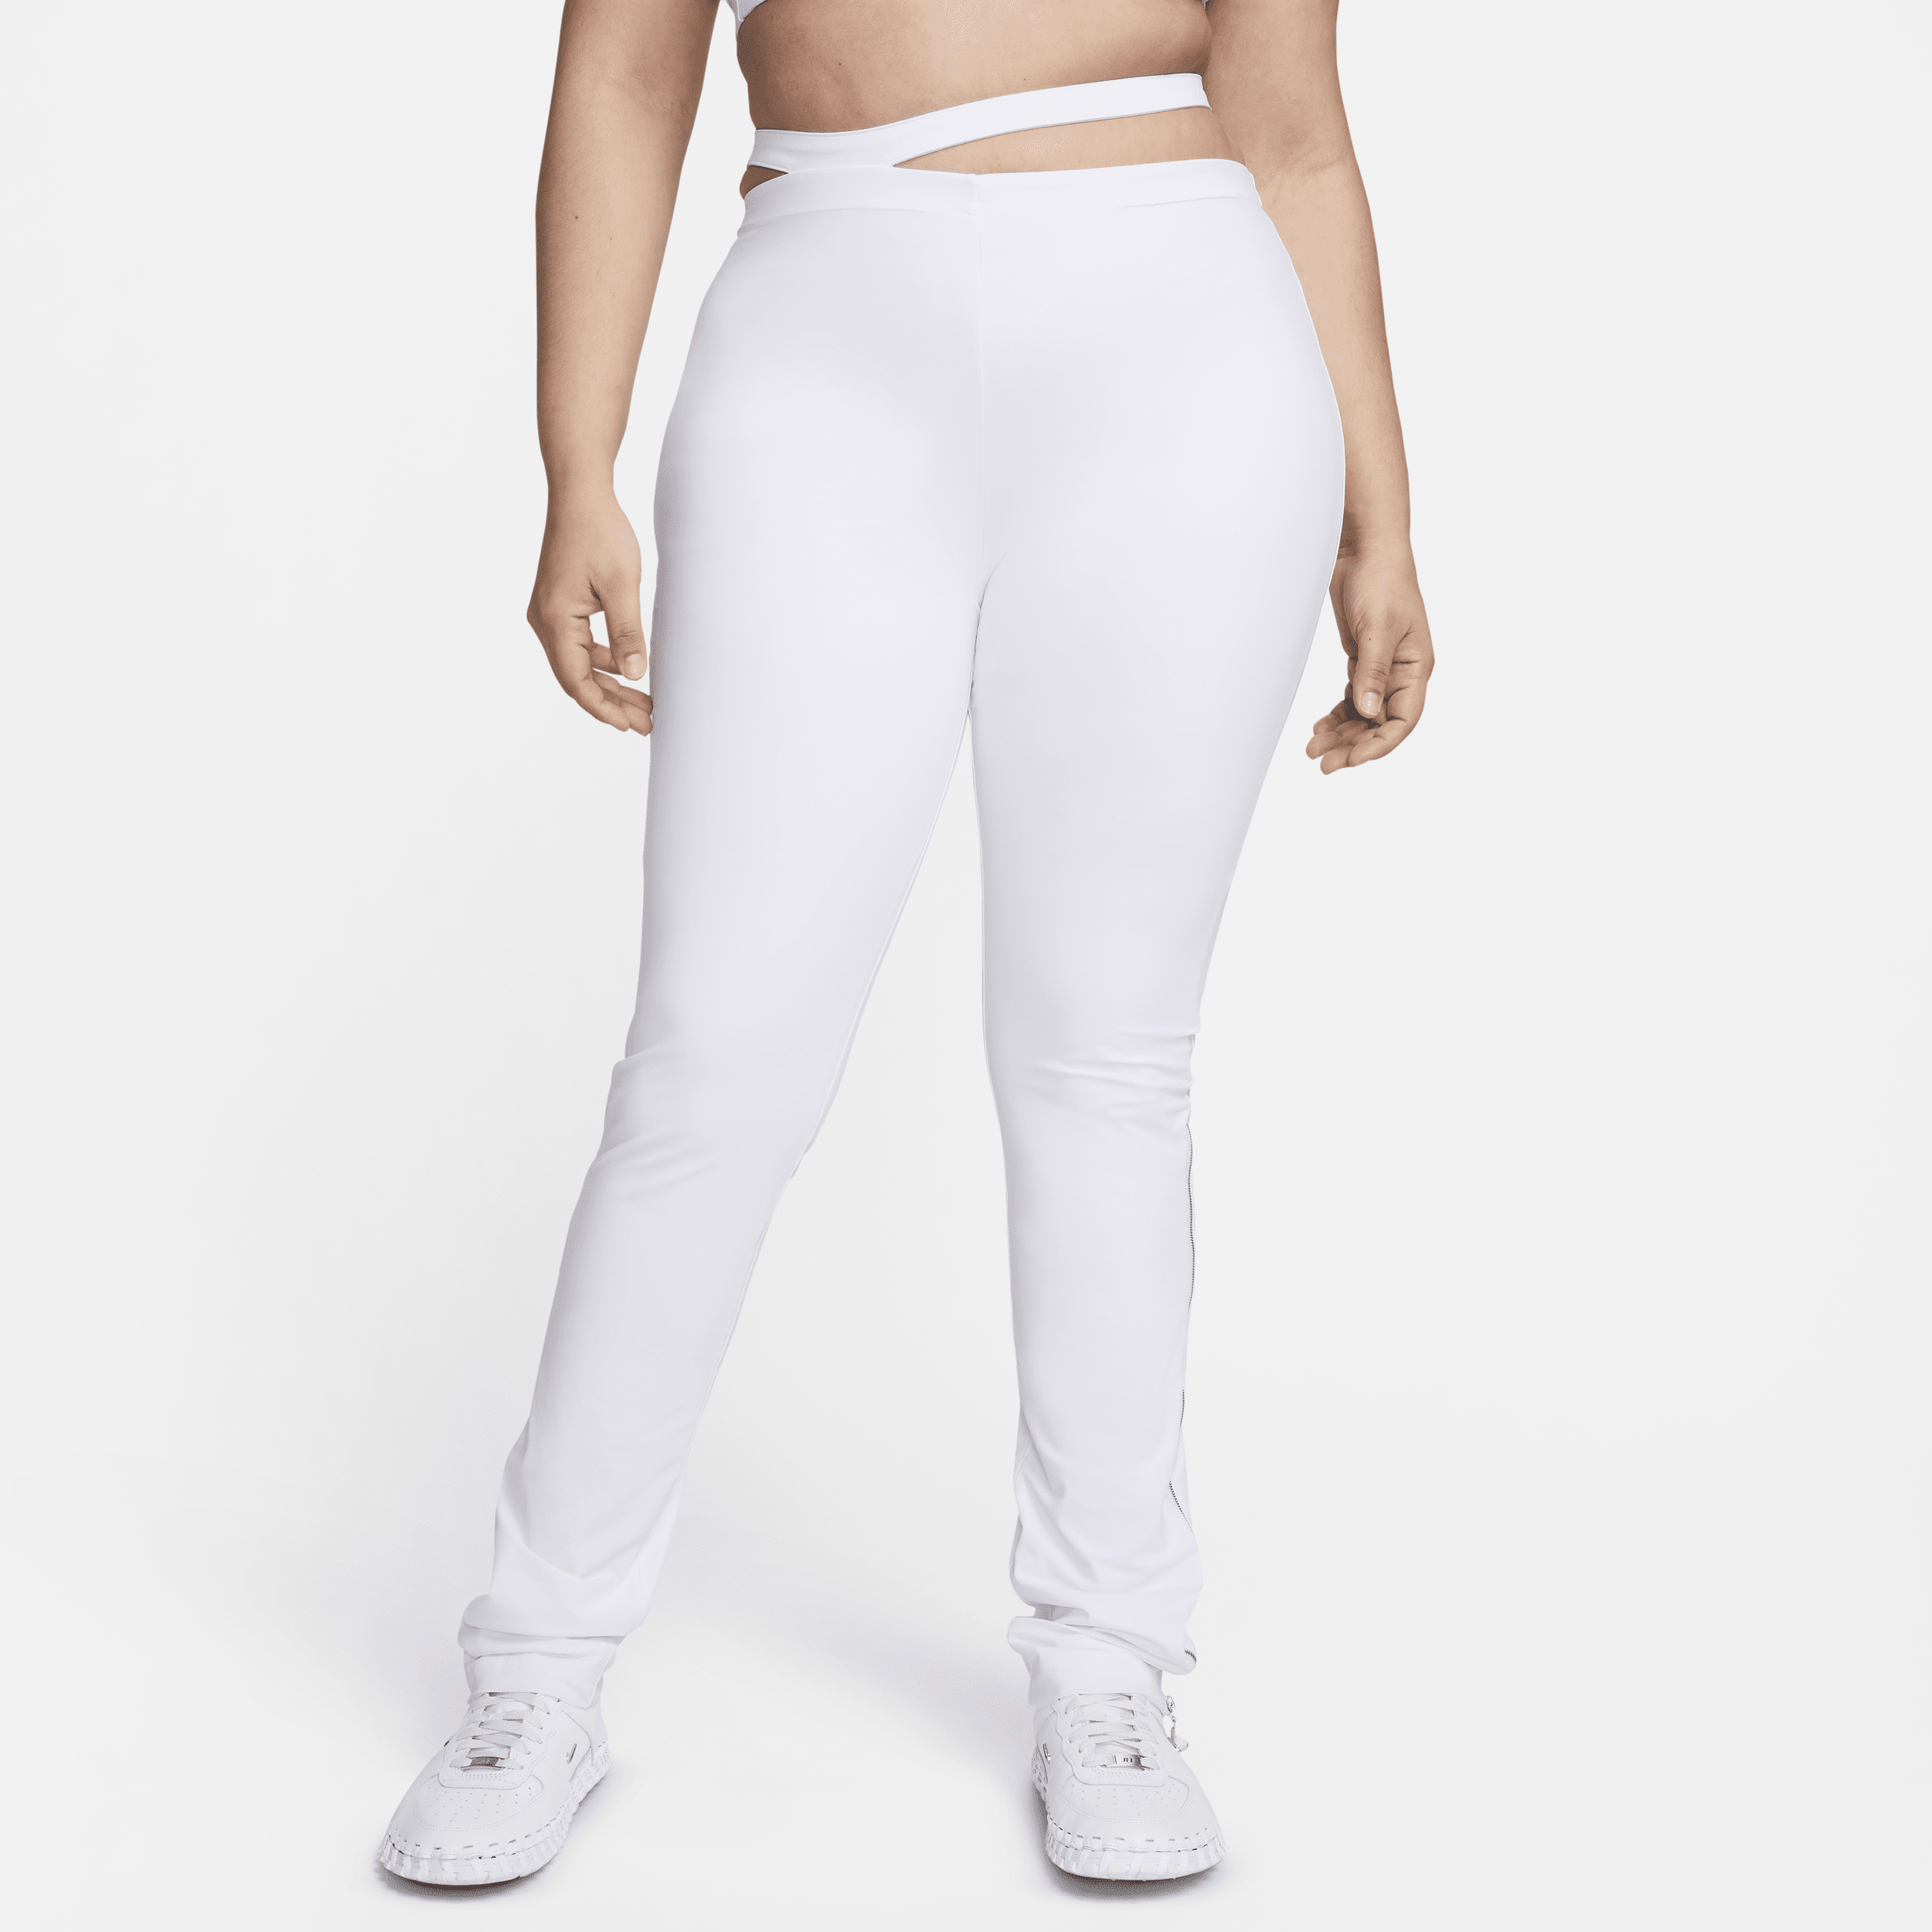 Pantaloni Nike x Jacquemus – Donna - Bianco